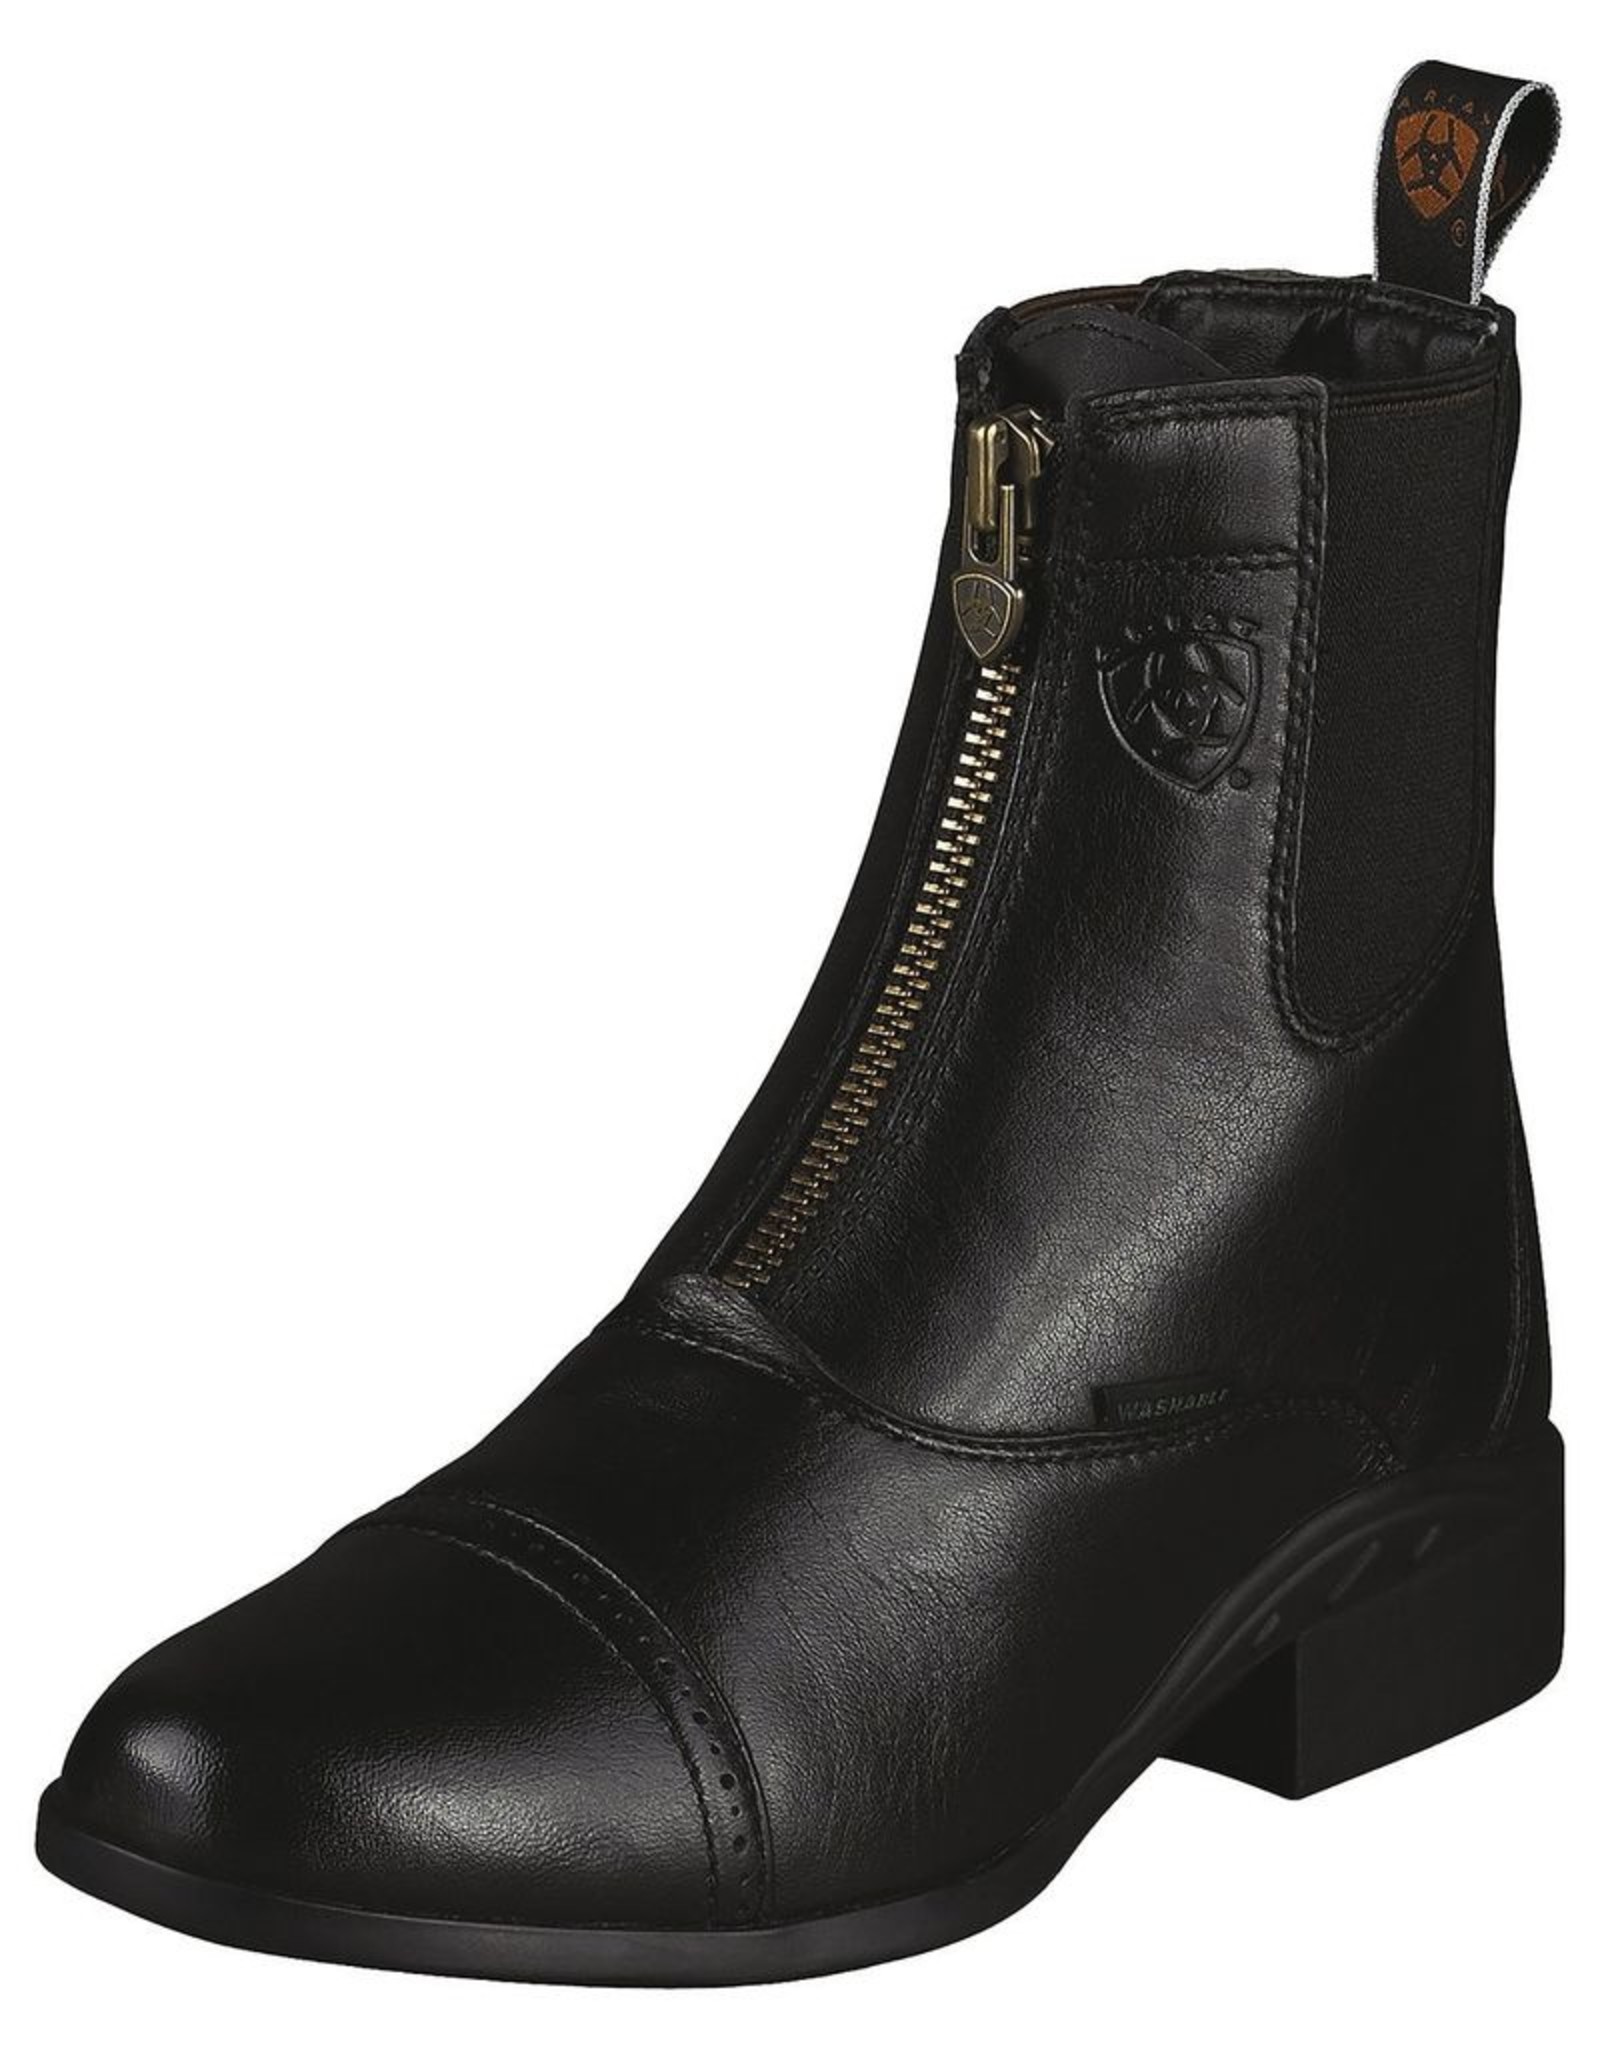 Ariat Ladies Breeze Zip Paddock Boot - Black